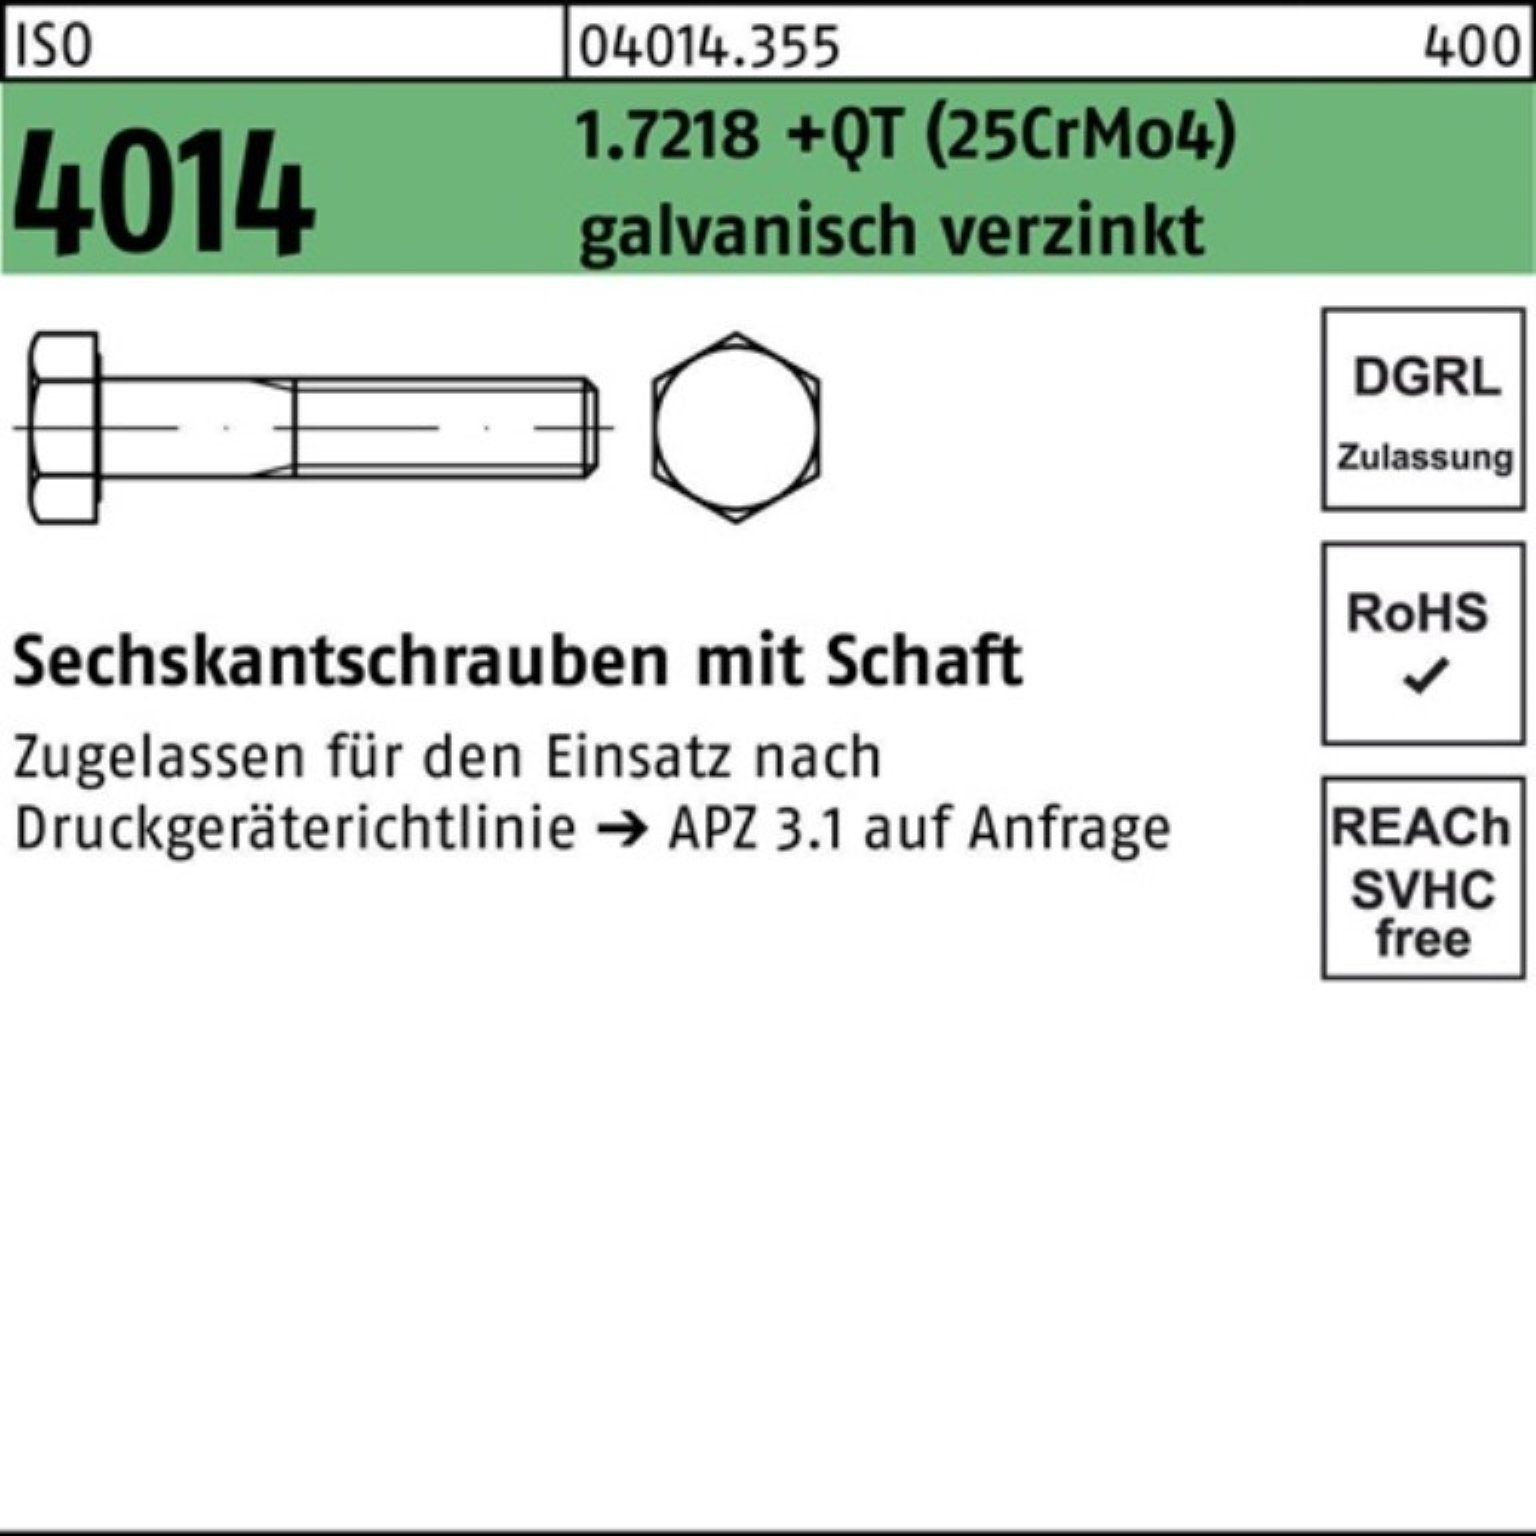 Bufab Sechskantschraube 1.7218 Pack Schaft 100er M36x200 Sechskantschraube 4014 +QT (25CrM ISO